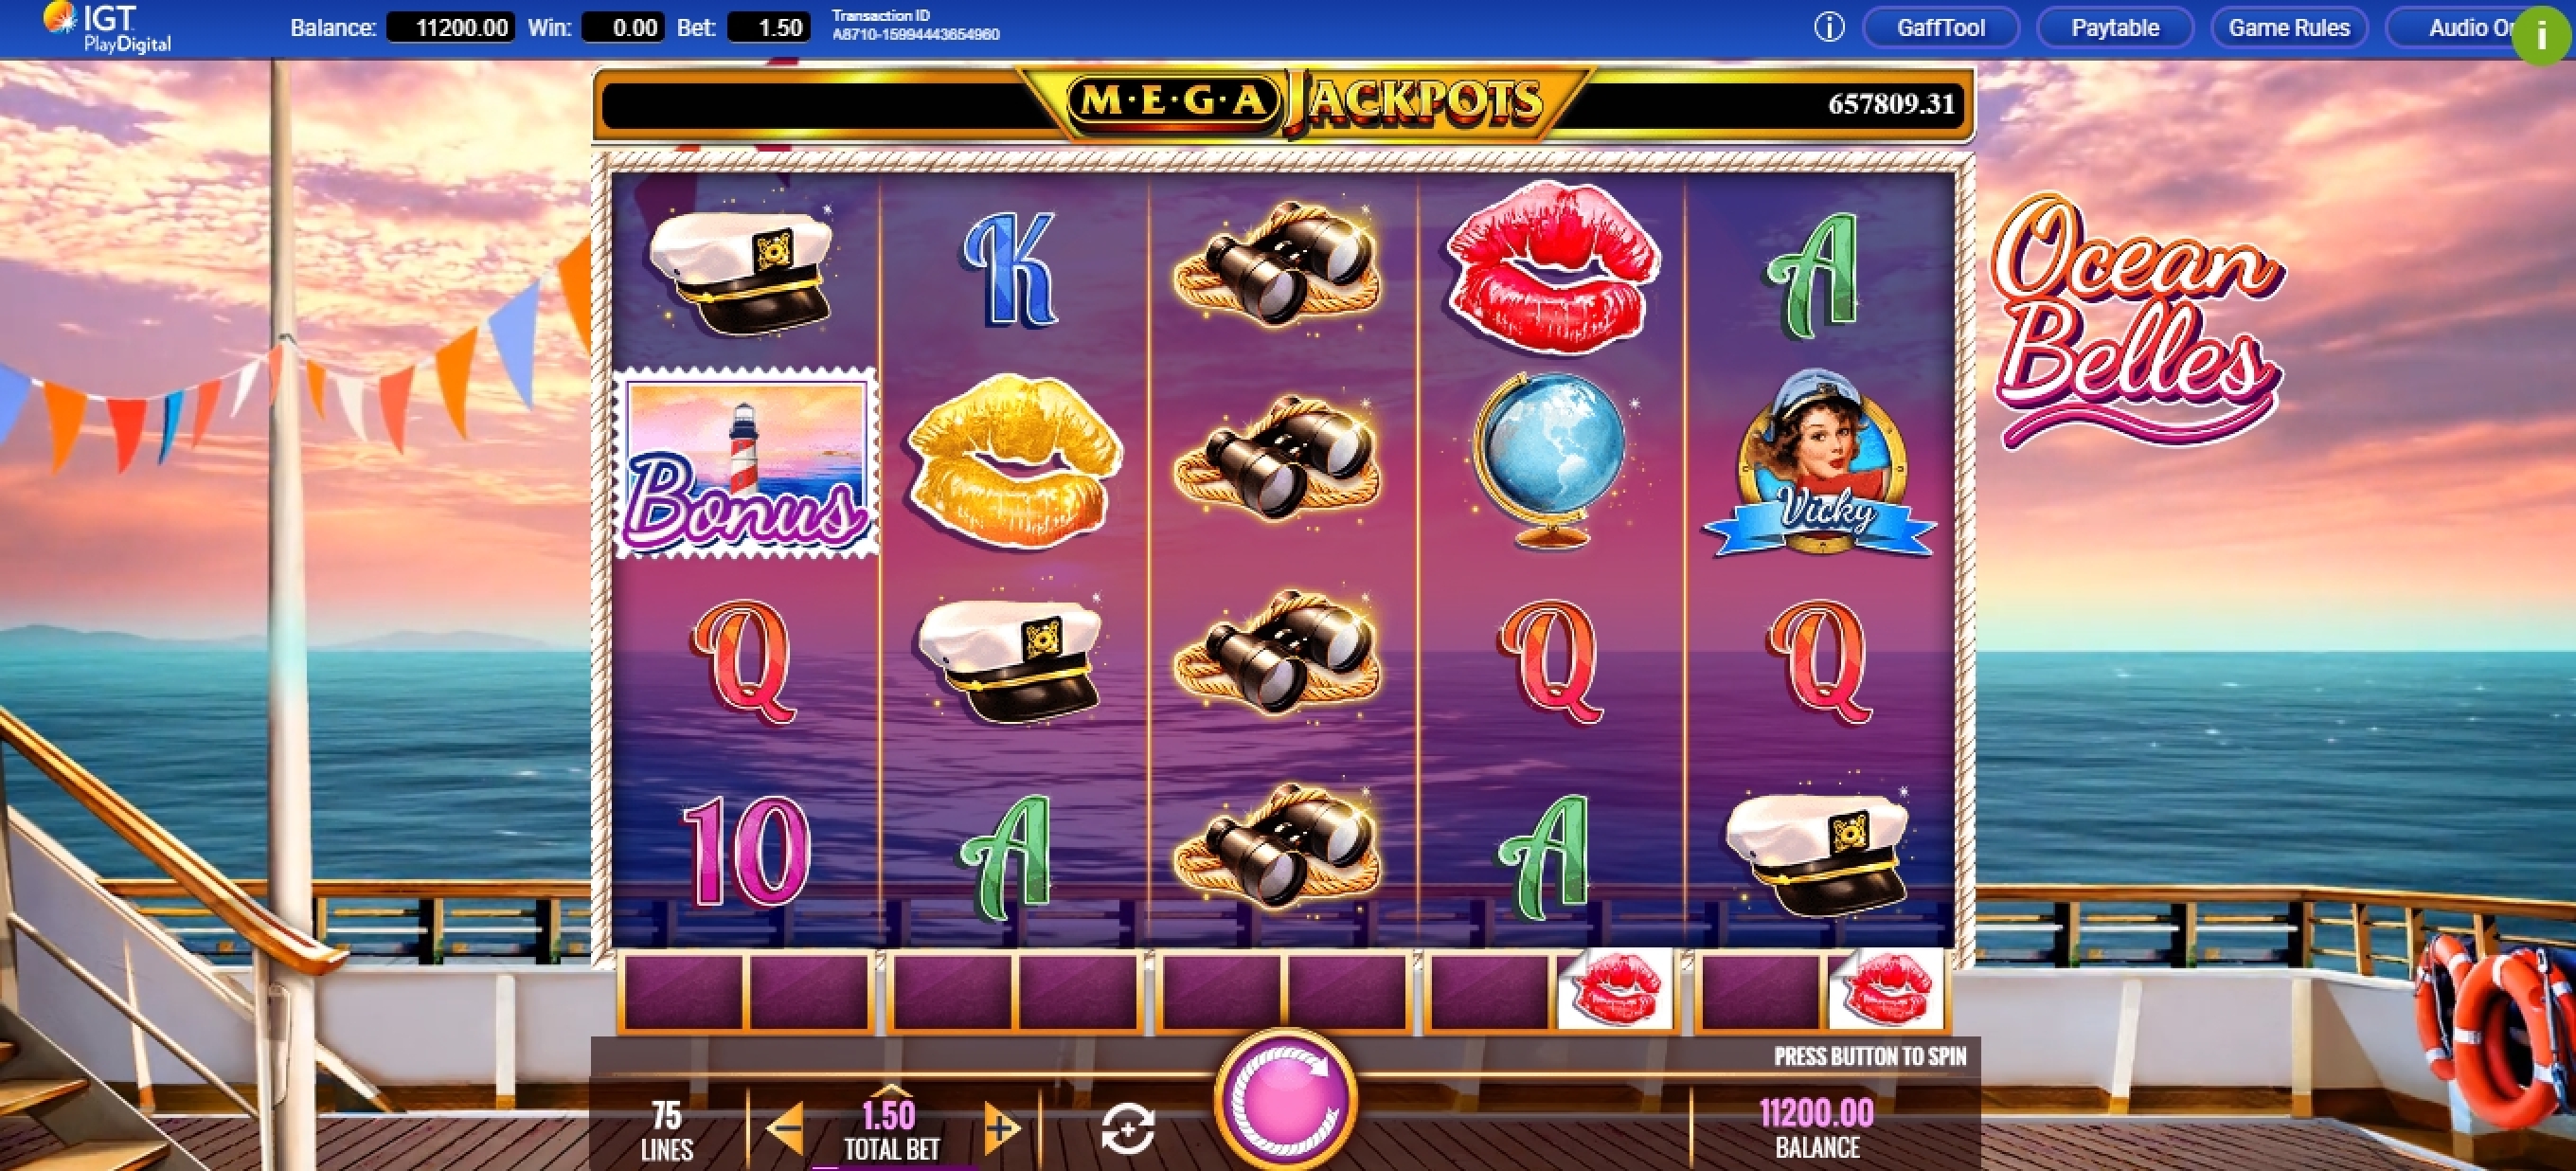 Reels in Megajackpots Ocean Belles Slot Game by IGT